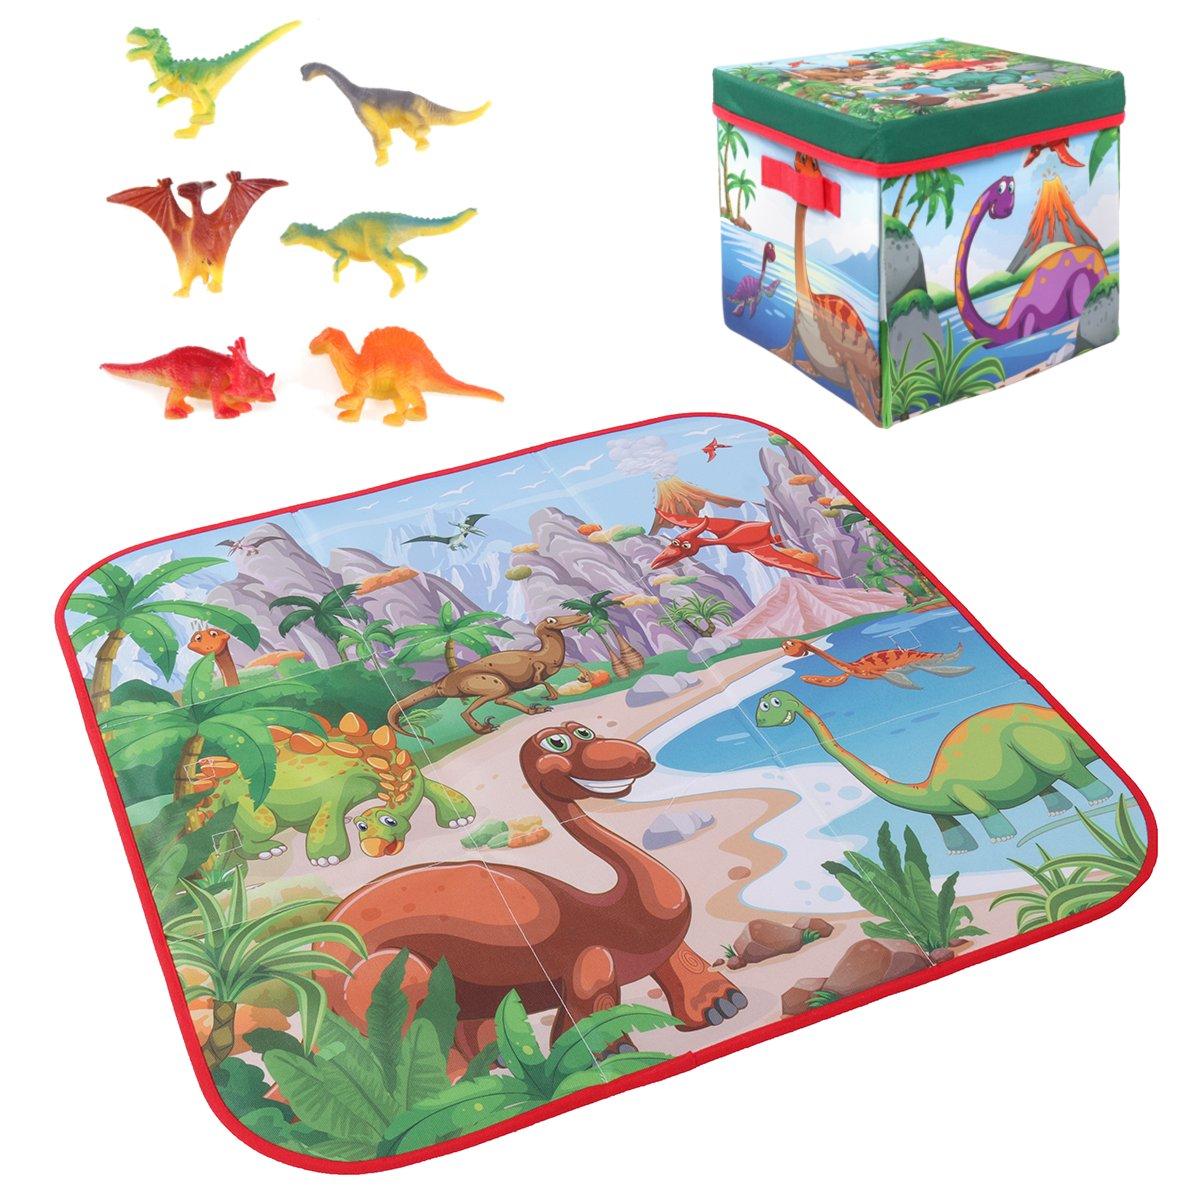 72x72cmの子供用カートゥーンプレイマット+ 6恐竜のおもちゃ、四角い折りたたみボックスキャンプマット、子供用幼児用クロールピクニックカーペット